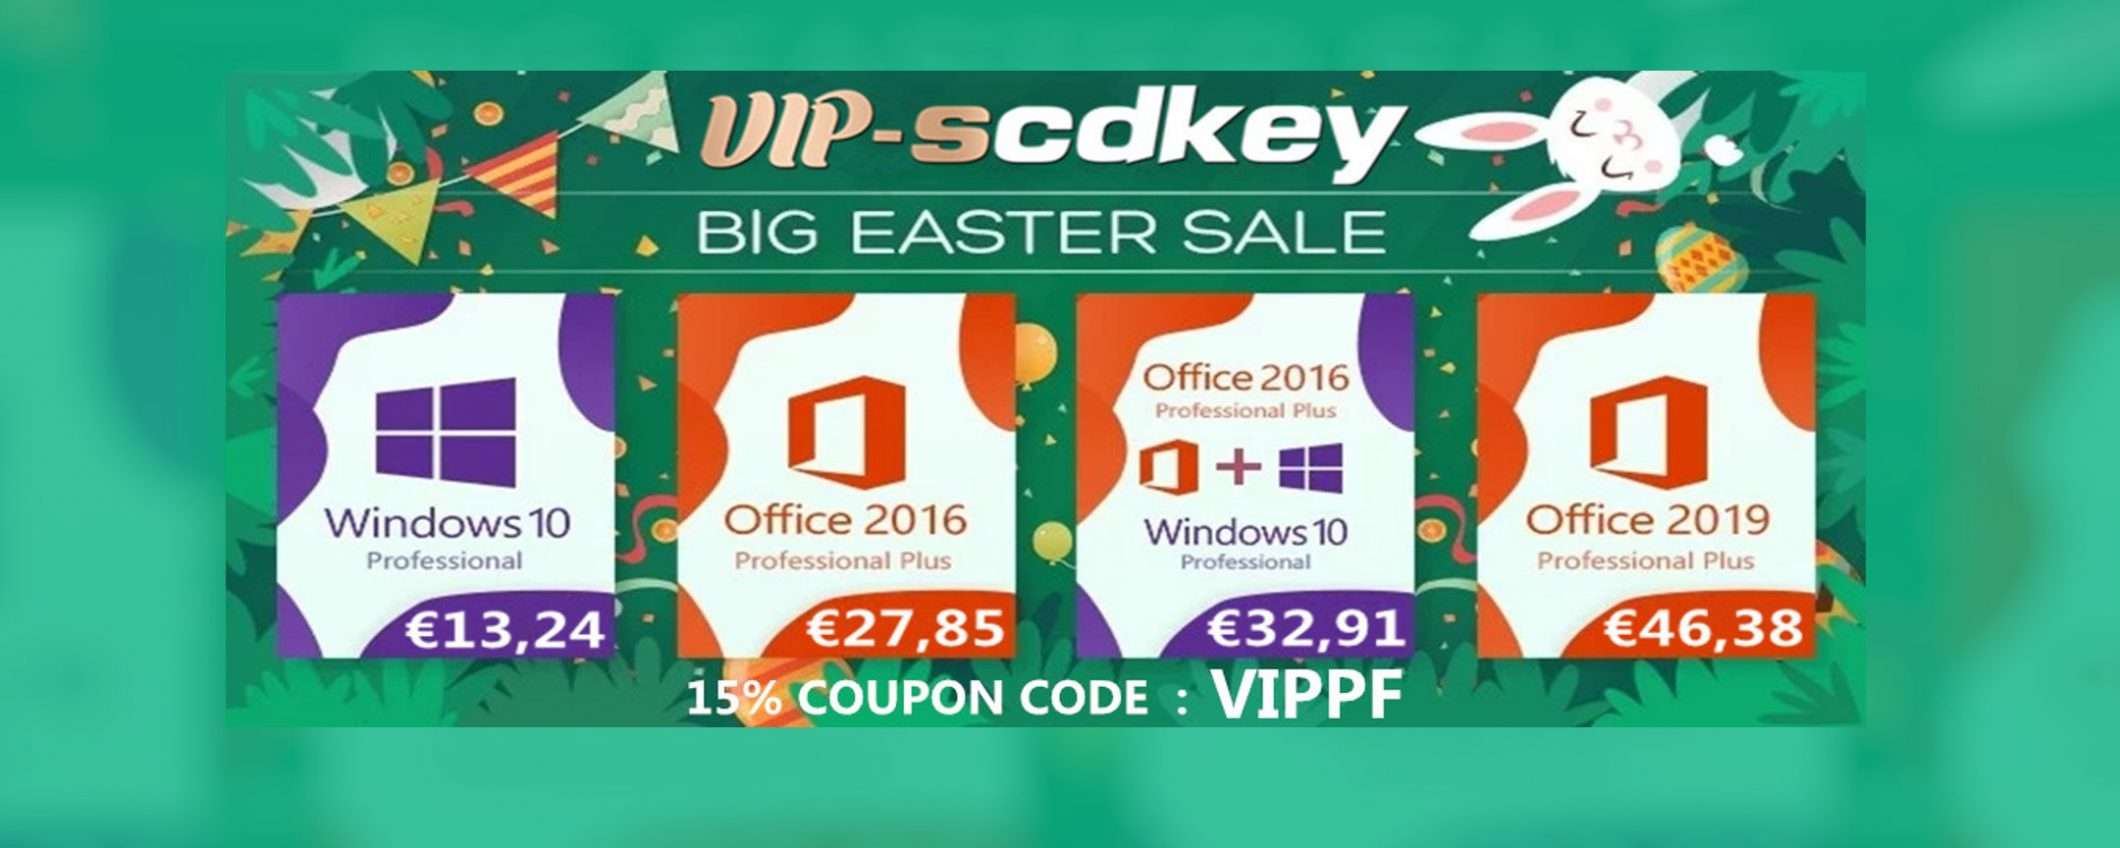 VIP-SCDKey offerte di Pasqua: Windows 10 Pro 13€, Office 2016 27€